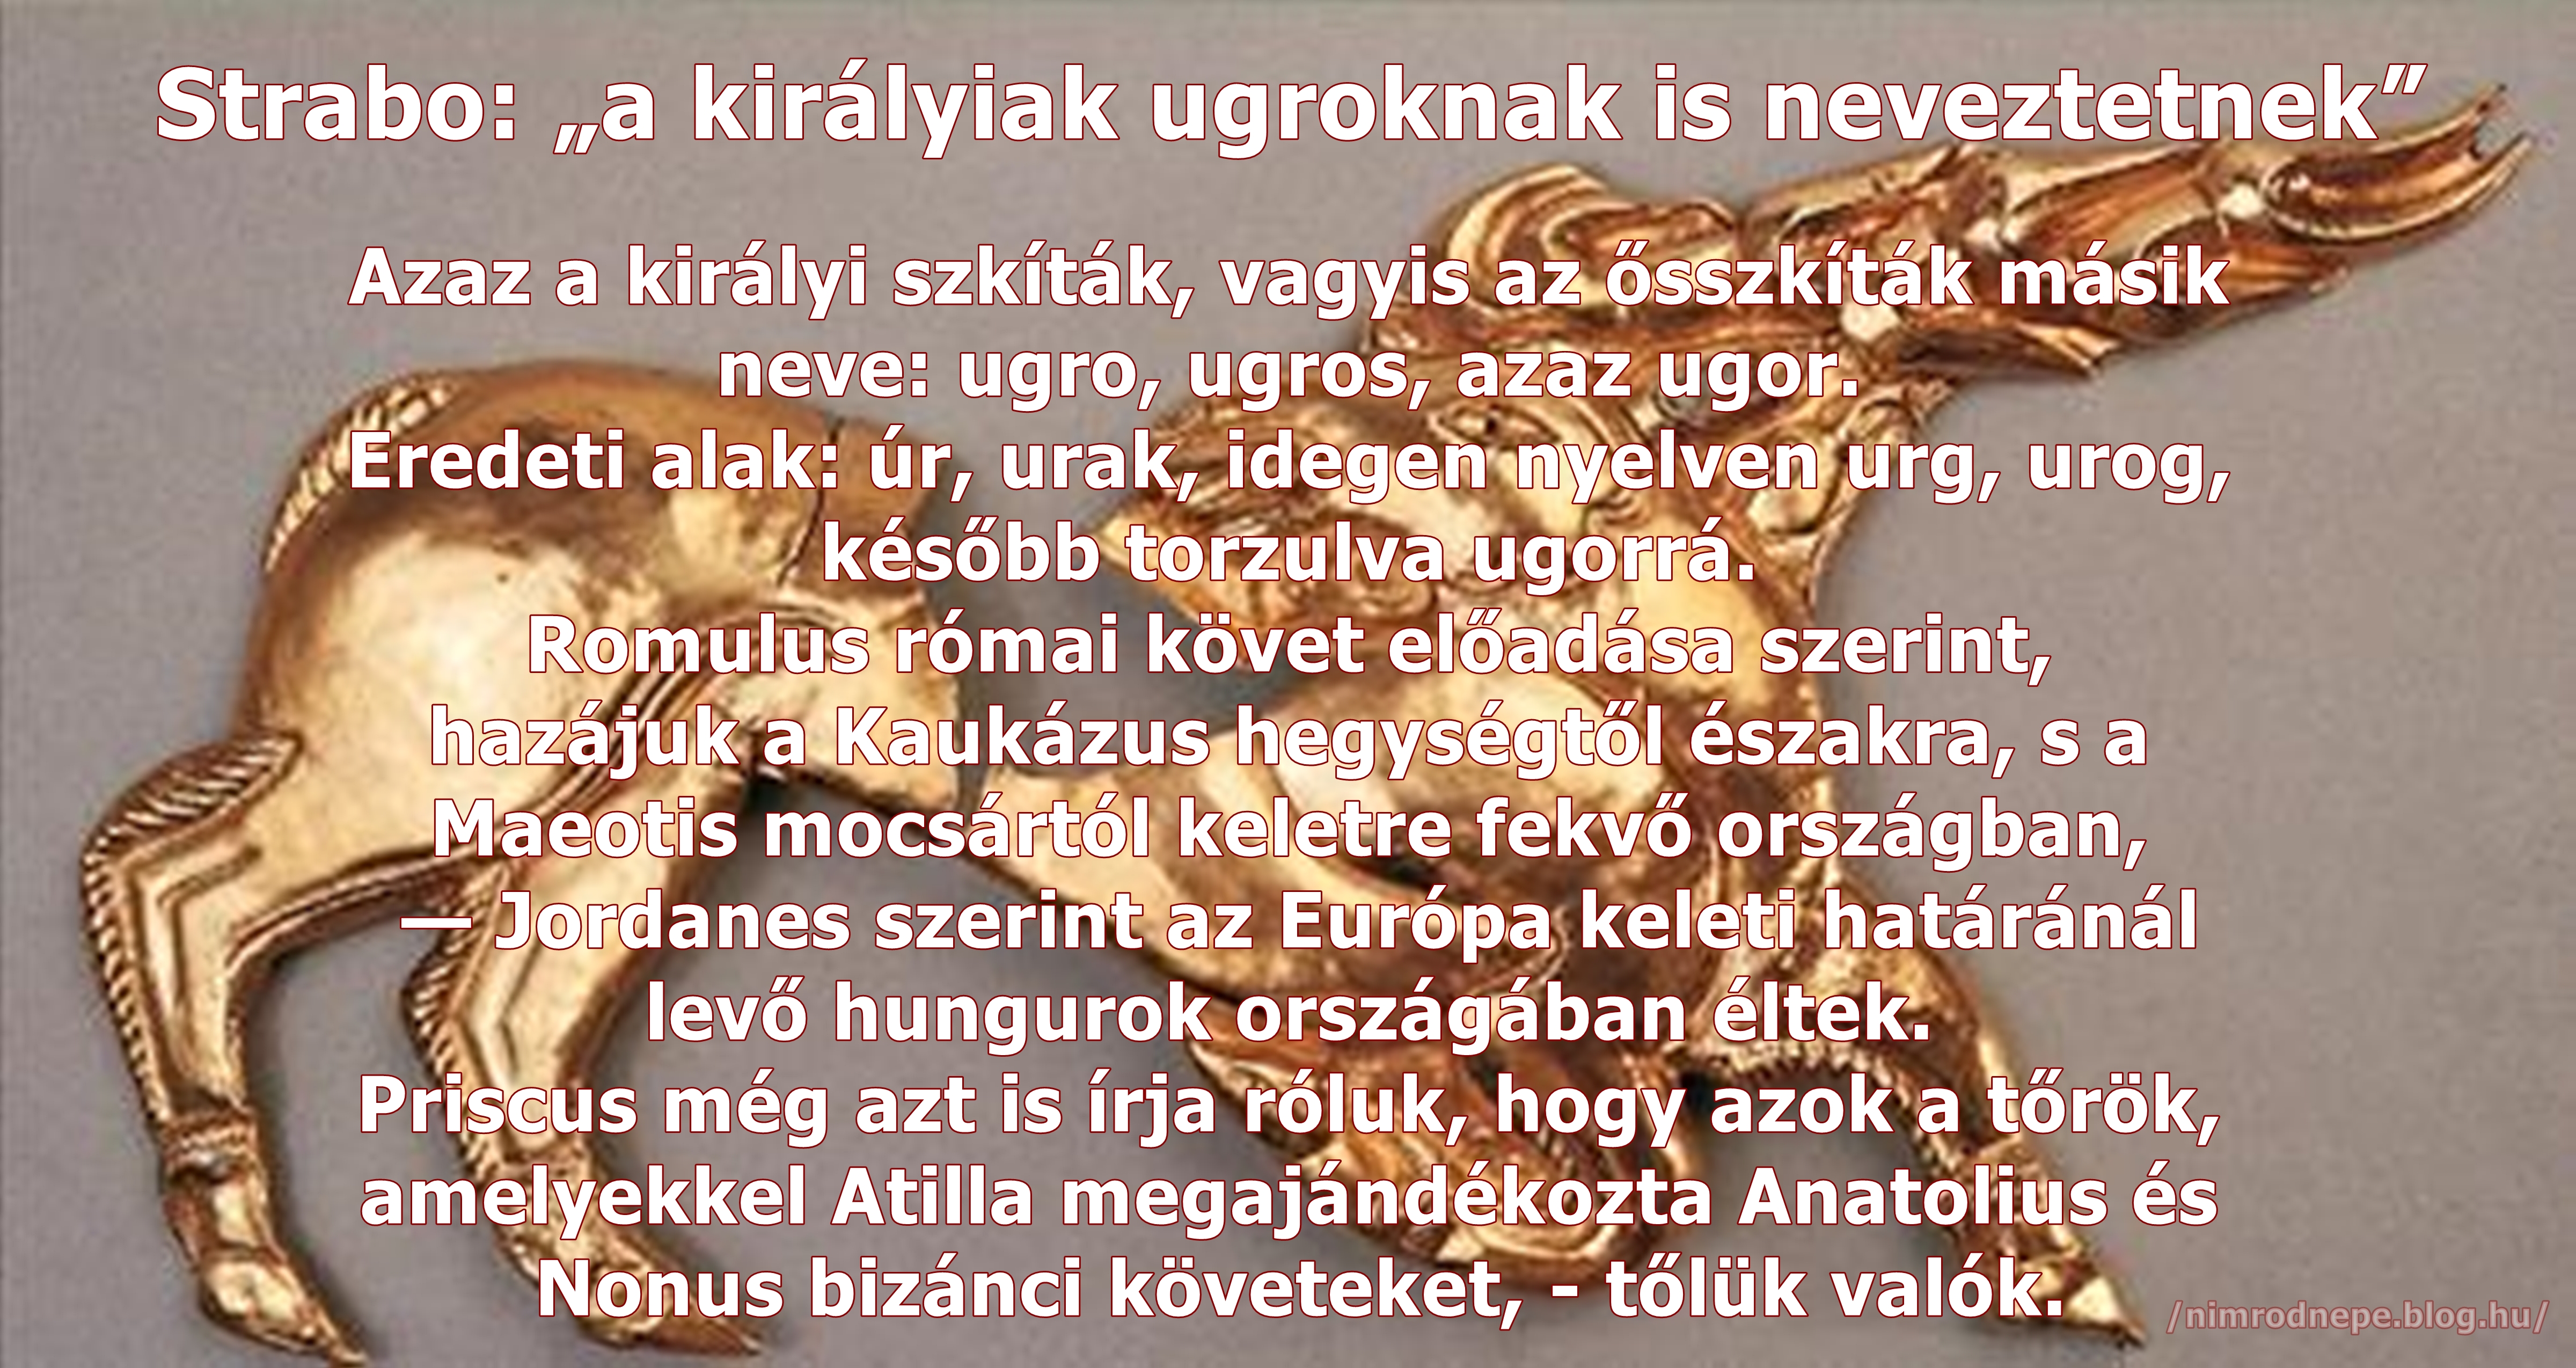 szkitak_azaz_magyarok.jpg